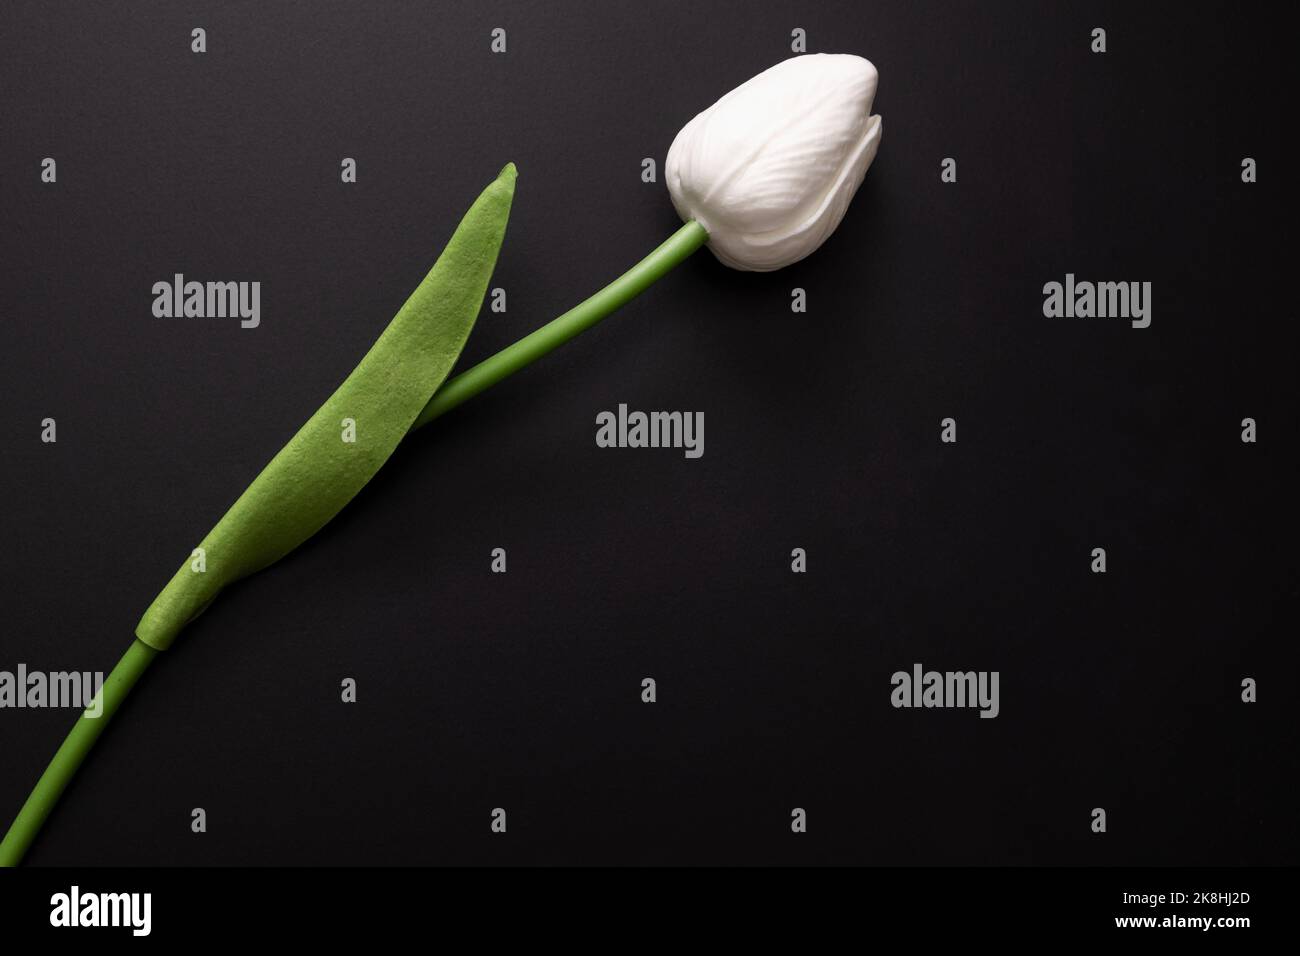 Detaillierte Aufnahme der weißen Tulpe auf dunklem Hintergrund. Stockfoto